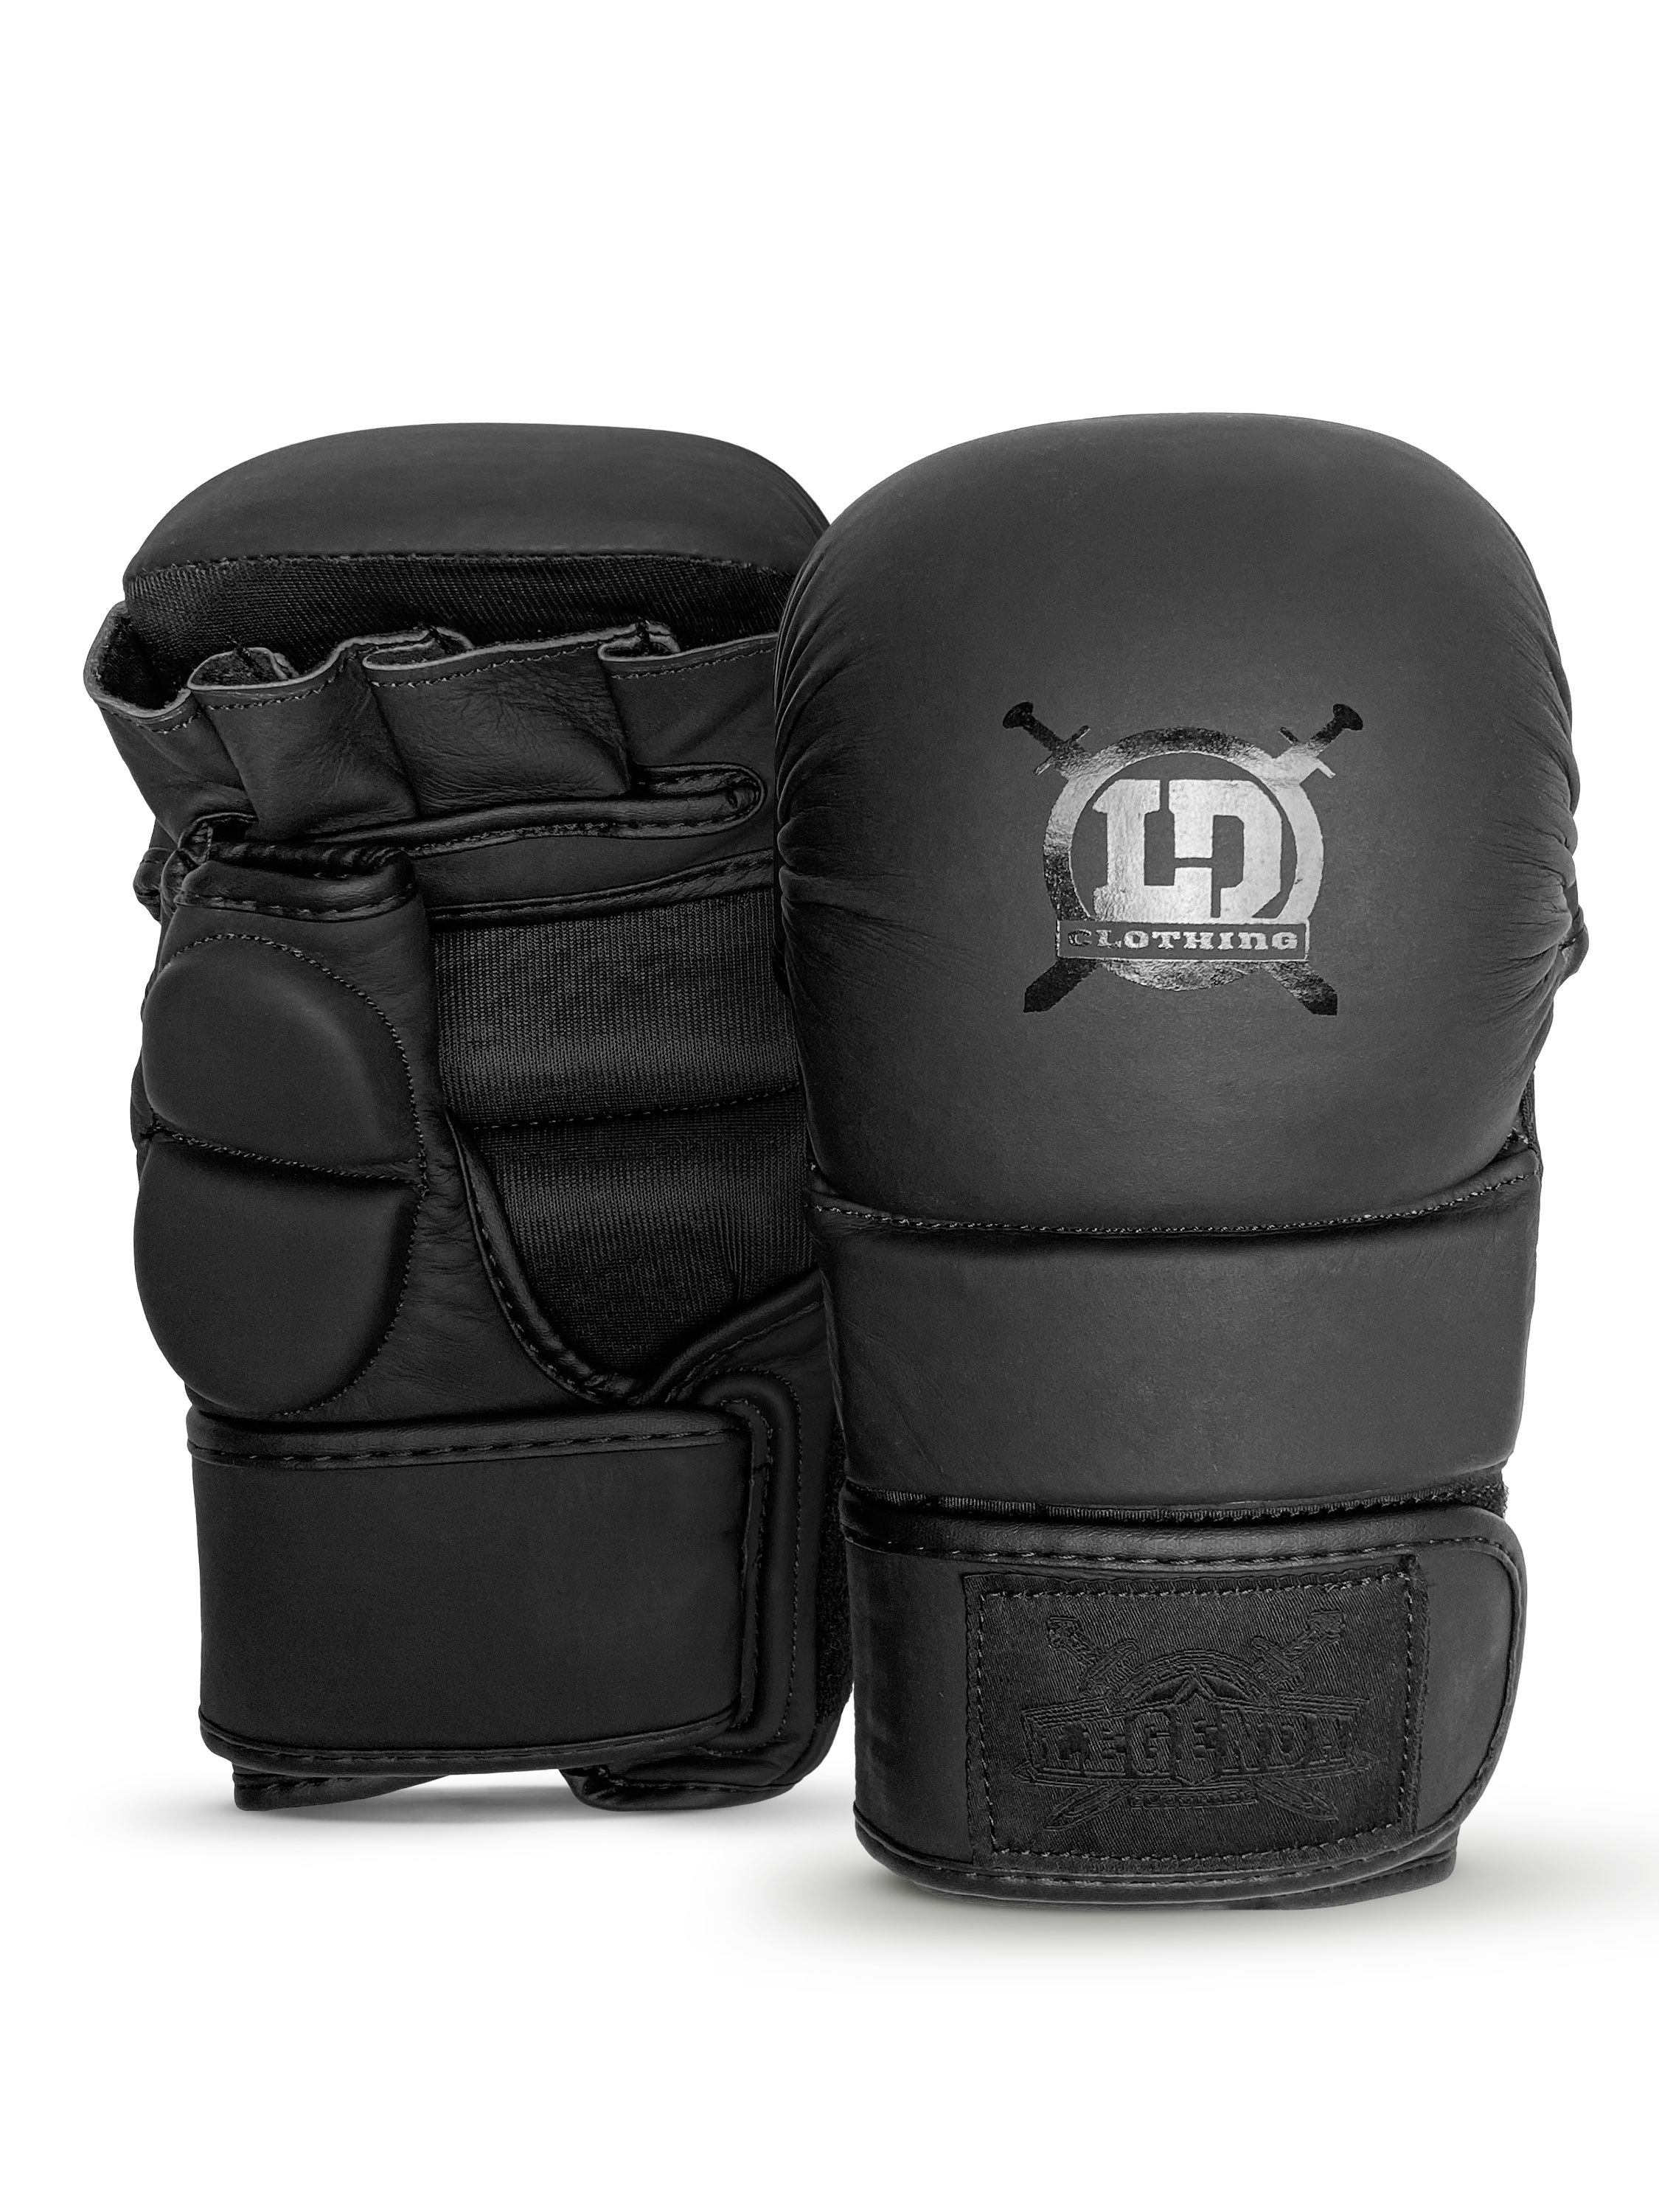 Перчатки MMA для спаррингов Legenda Chrom черные XL